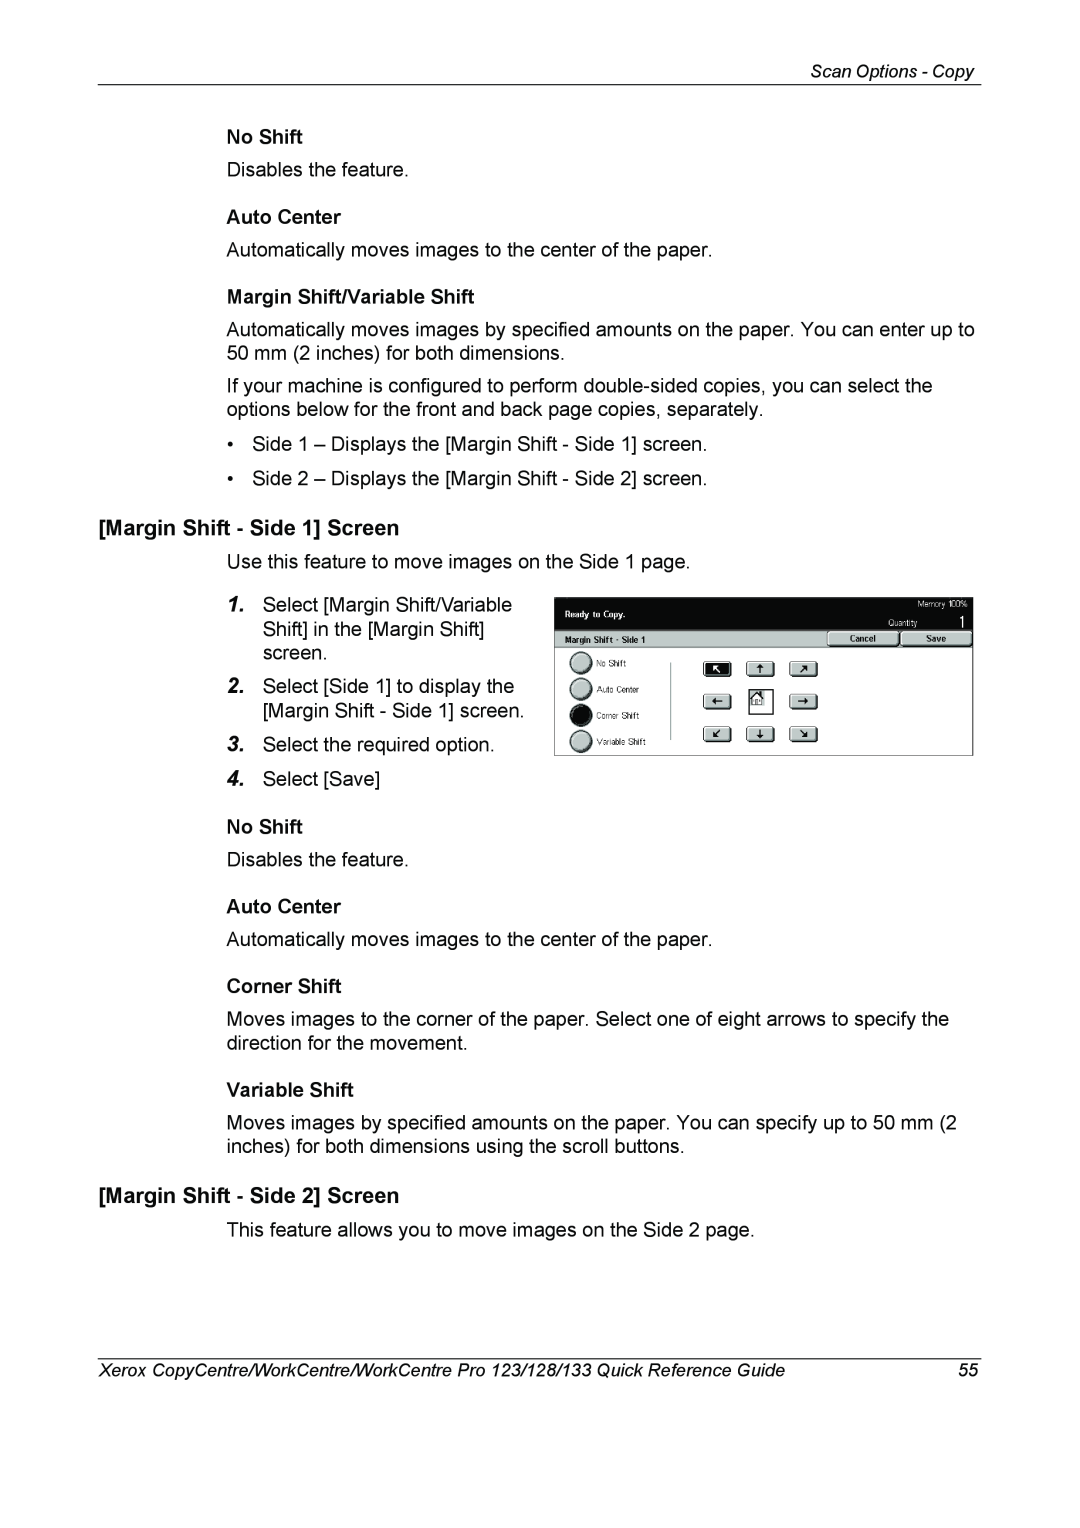 Xerox 604P18037 manual Margin Shift - Side 1 Screen, Margin Shift - Side 2 Screen, No Shift, Auto Center, Corner Shift 